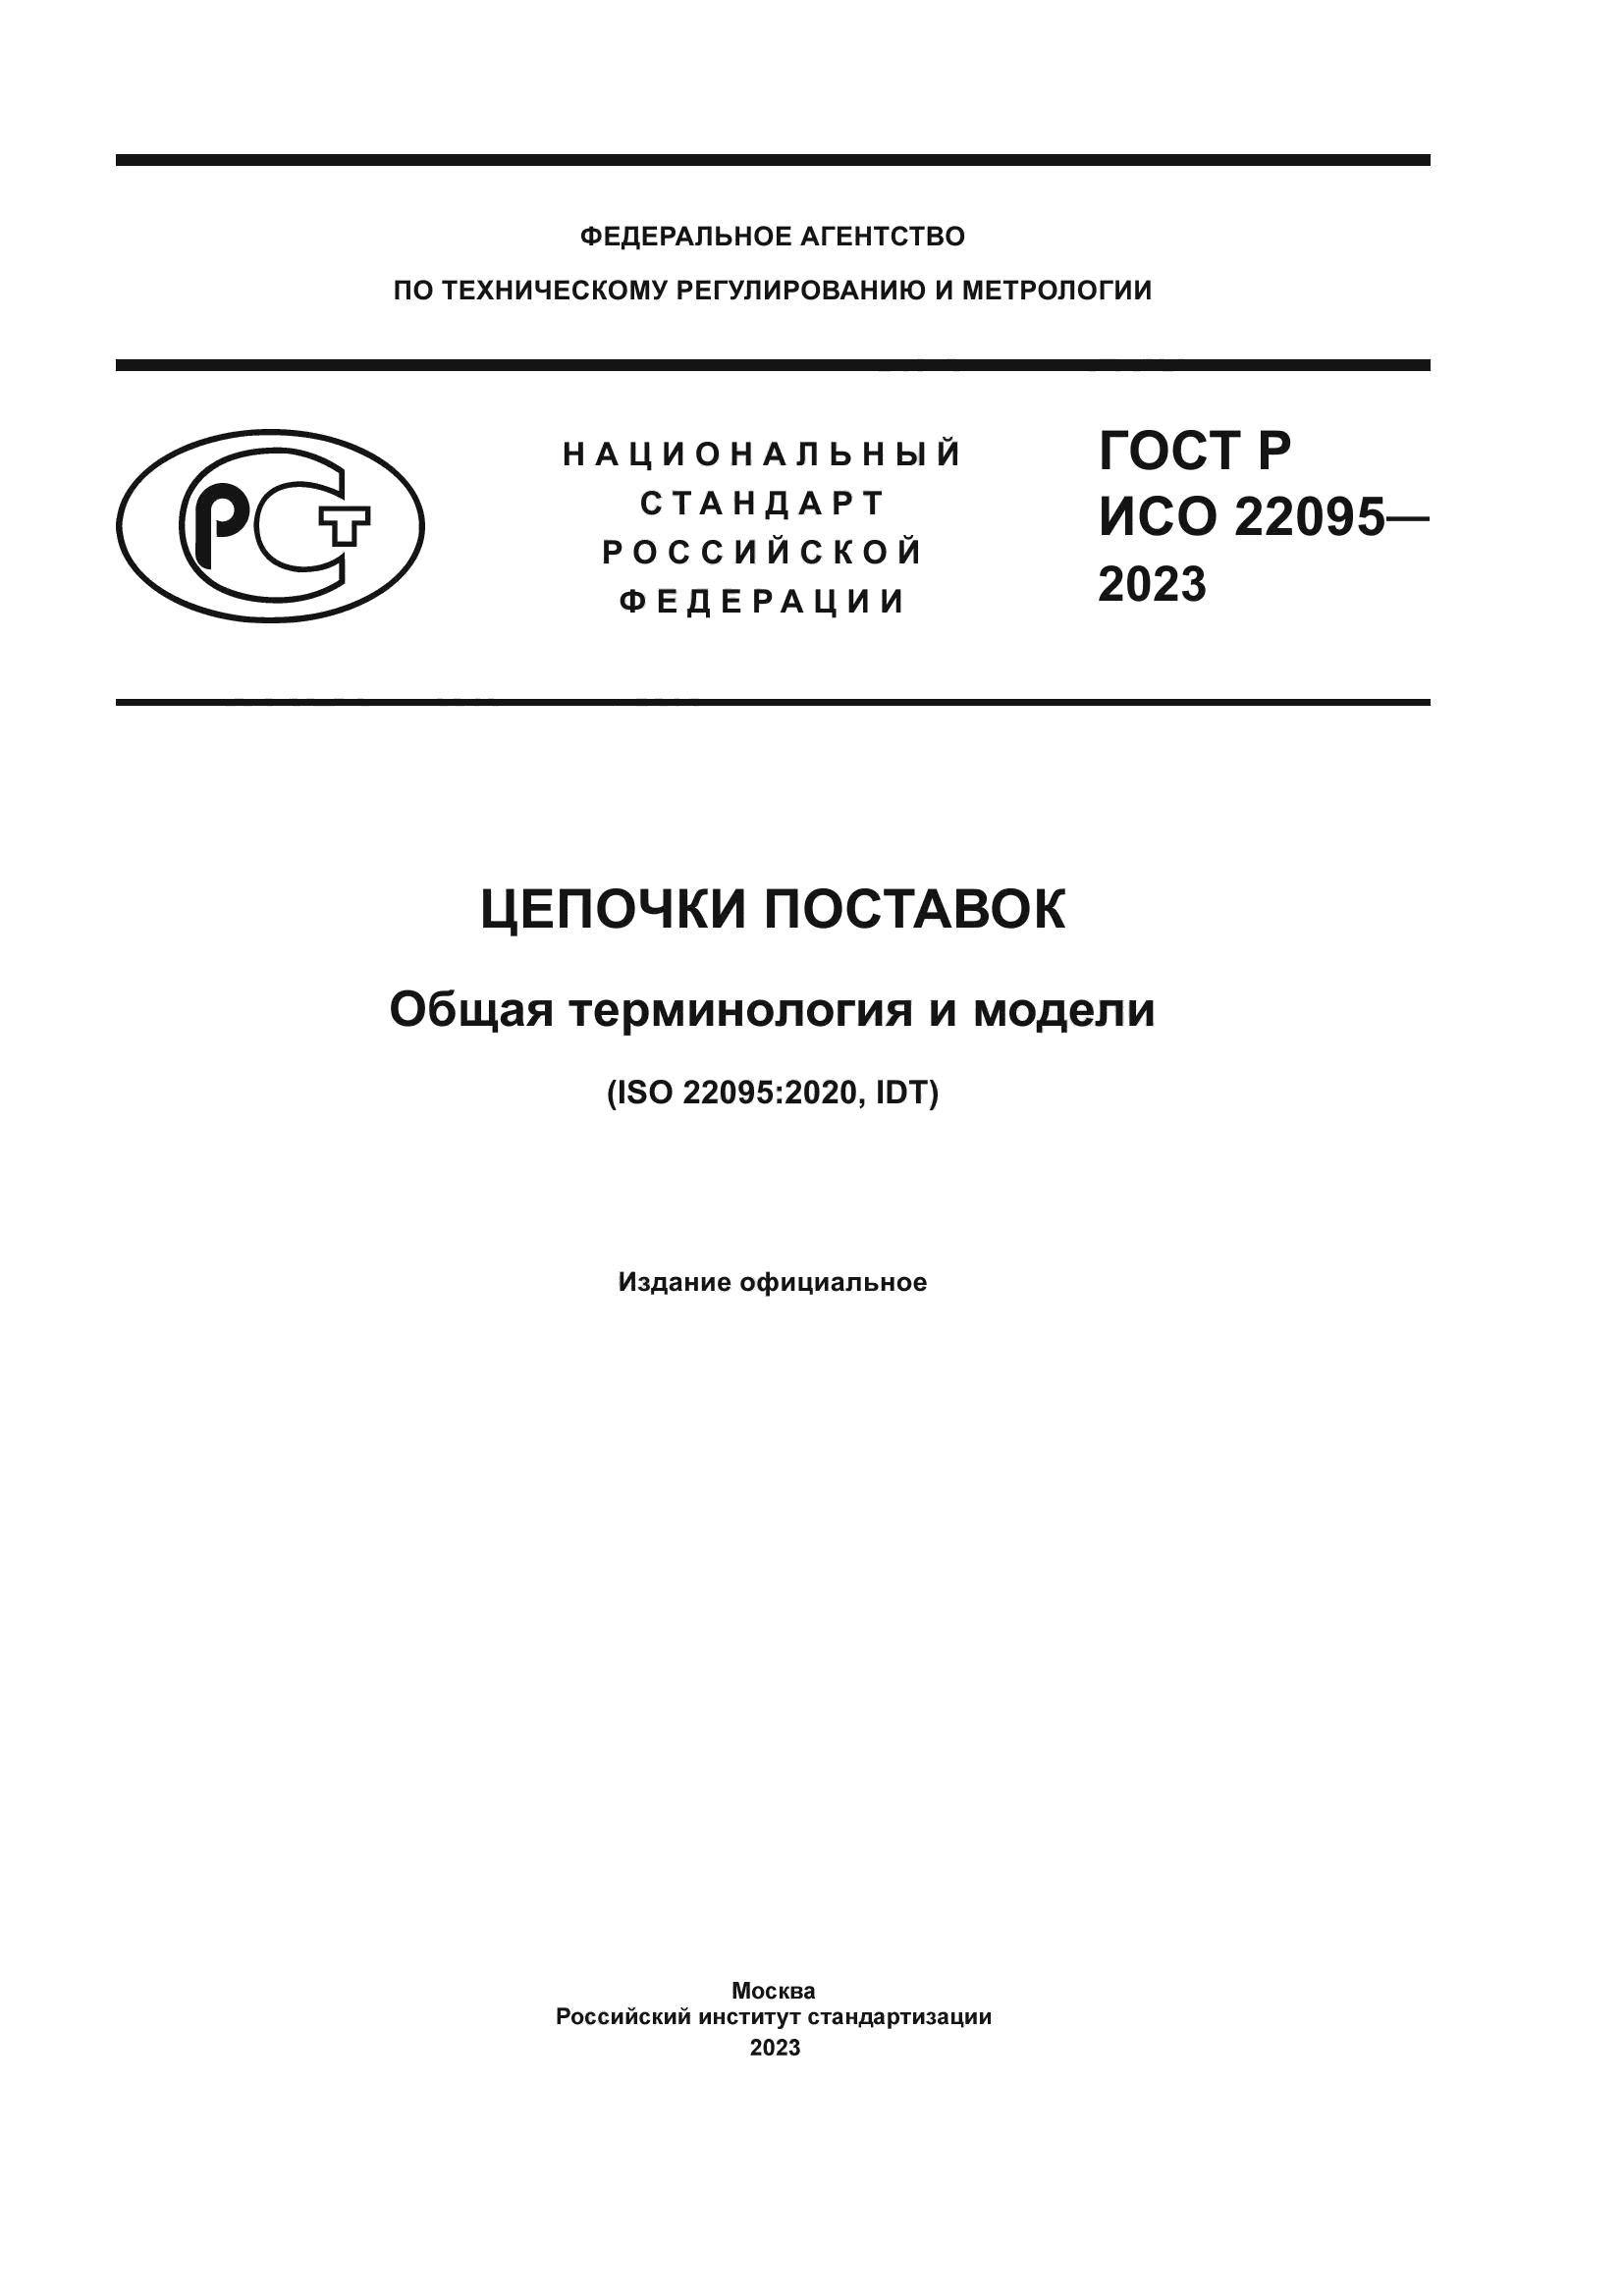 ГОСТ Р ИСО 22095-2023